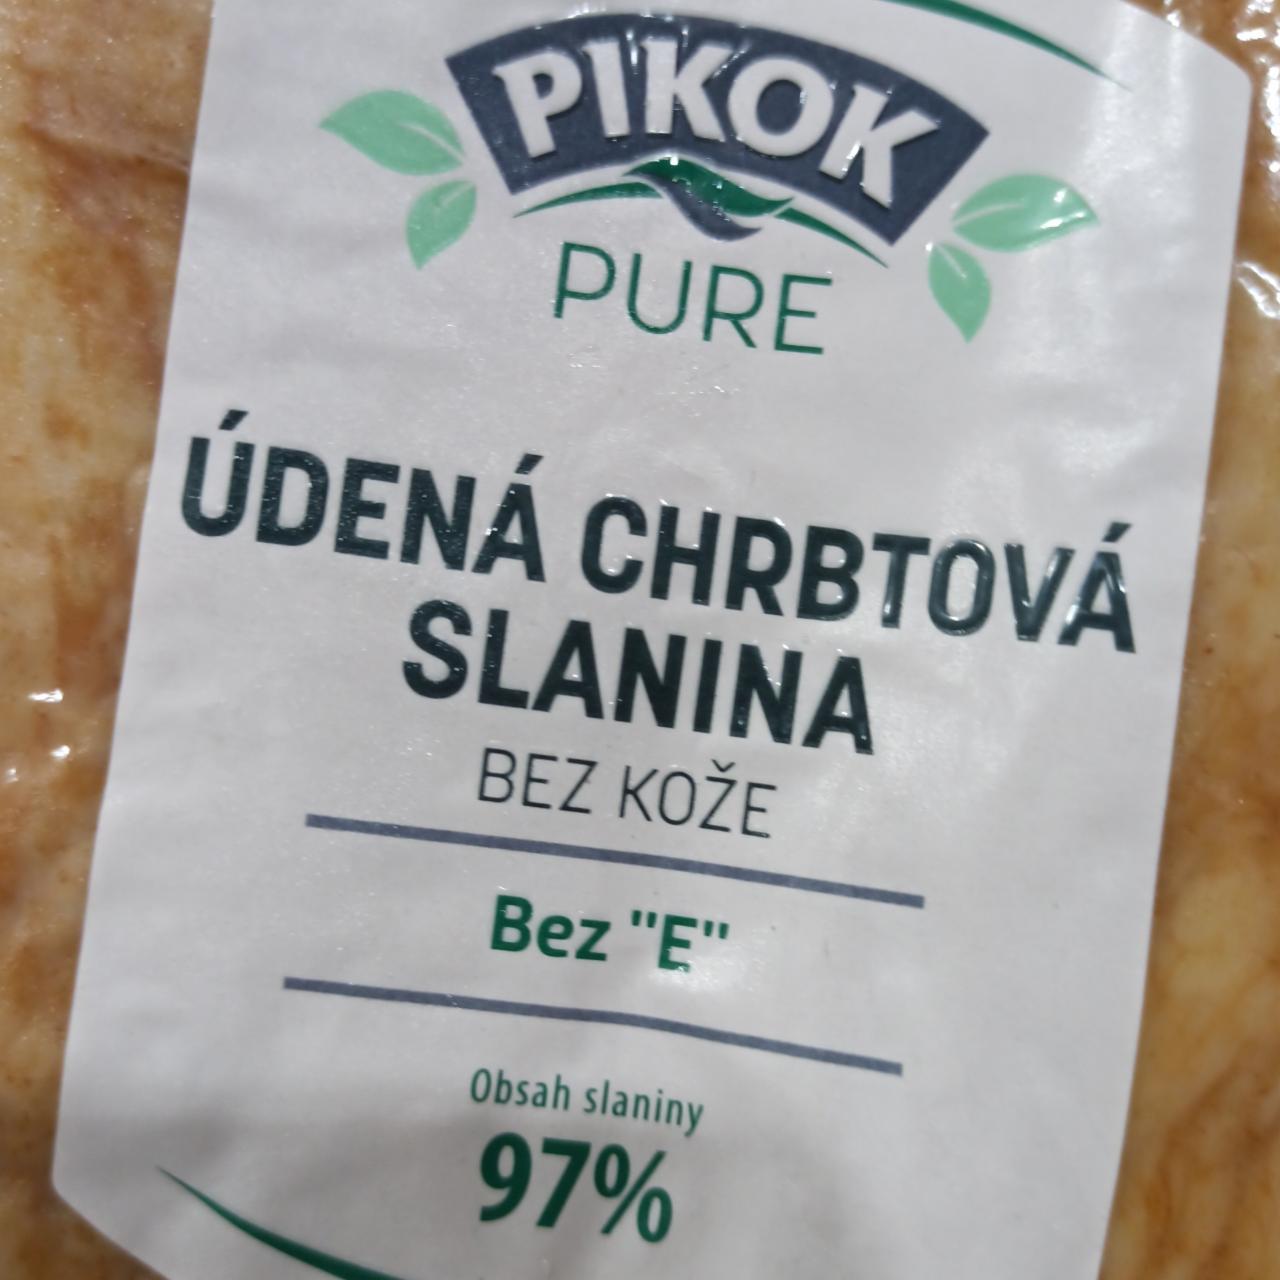 Fotografie - udena chrbtova slanina bez koze Pikok Pure